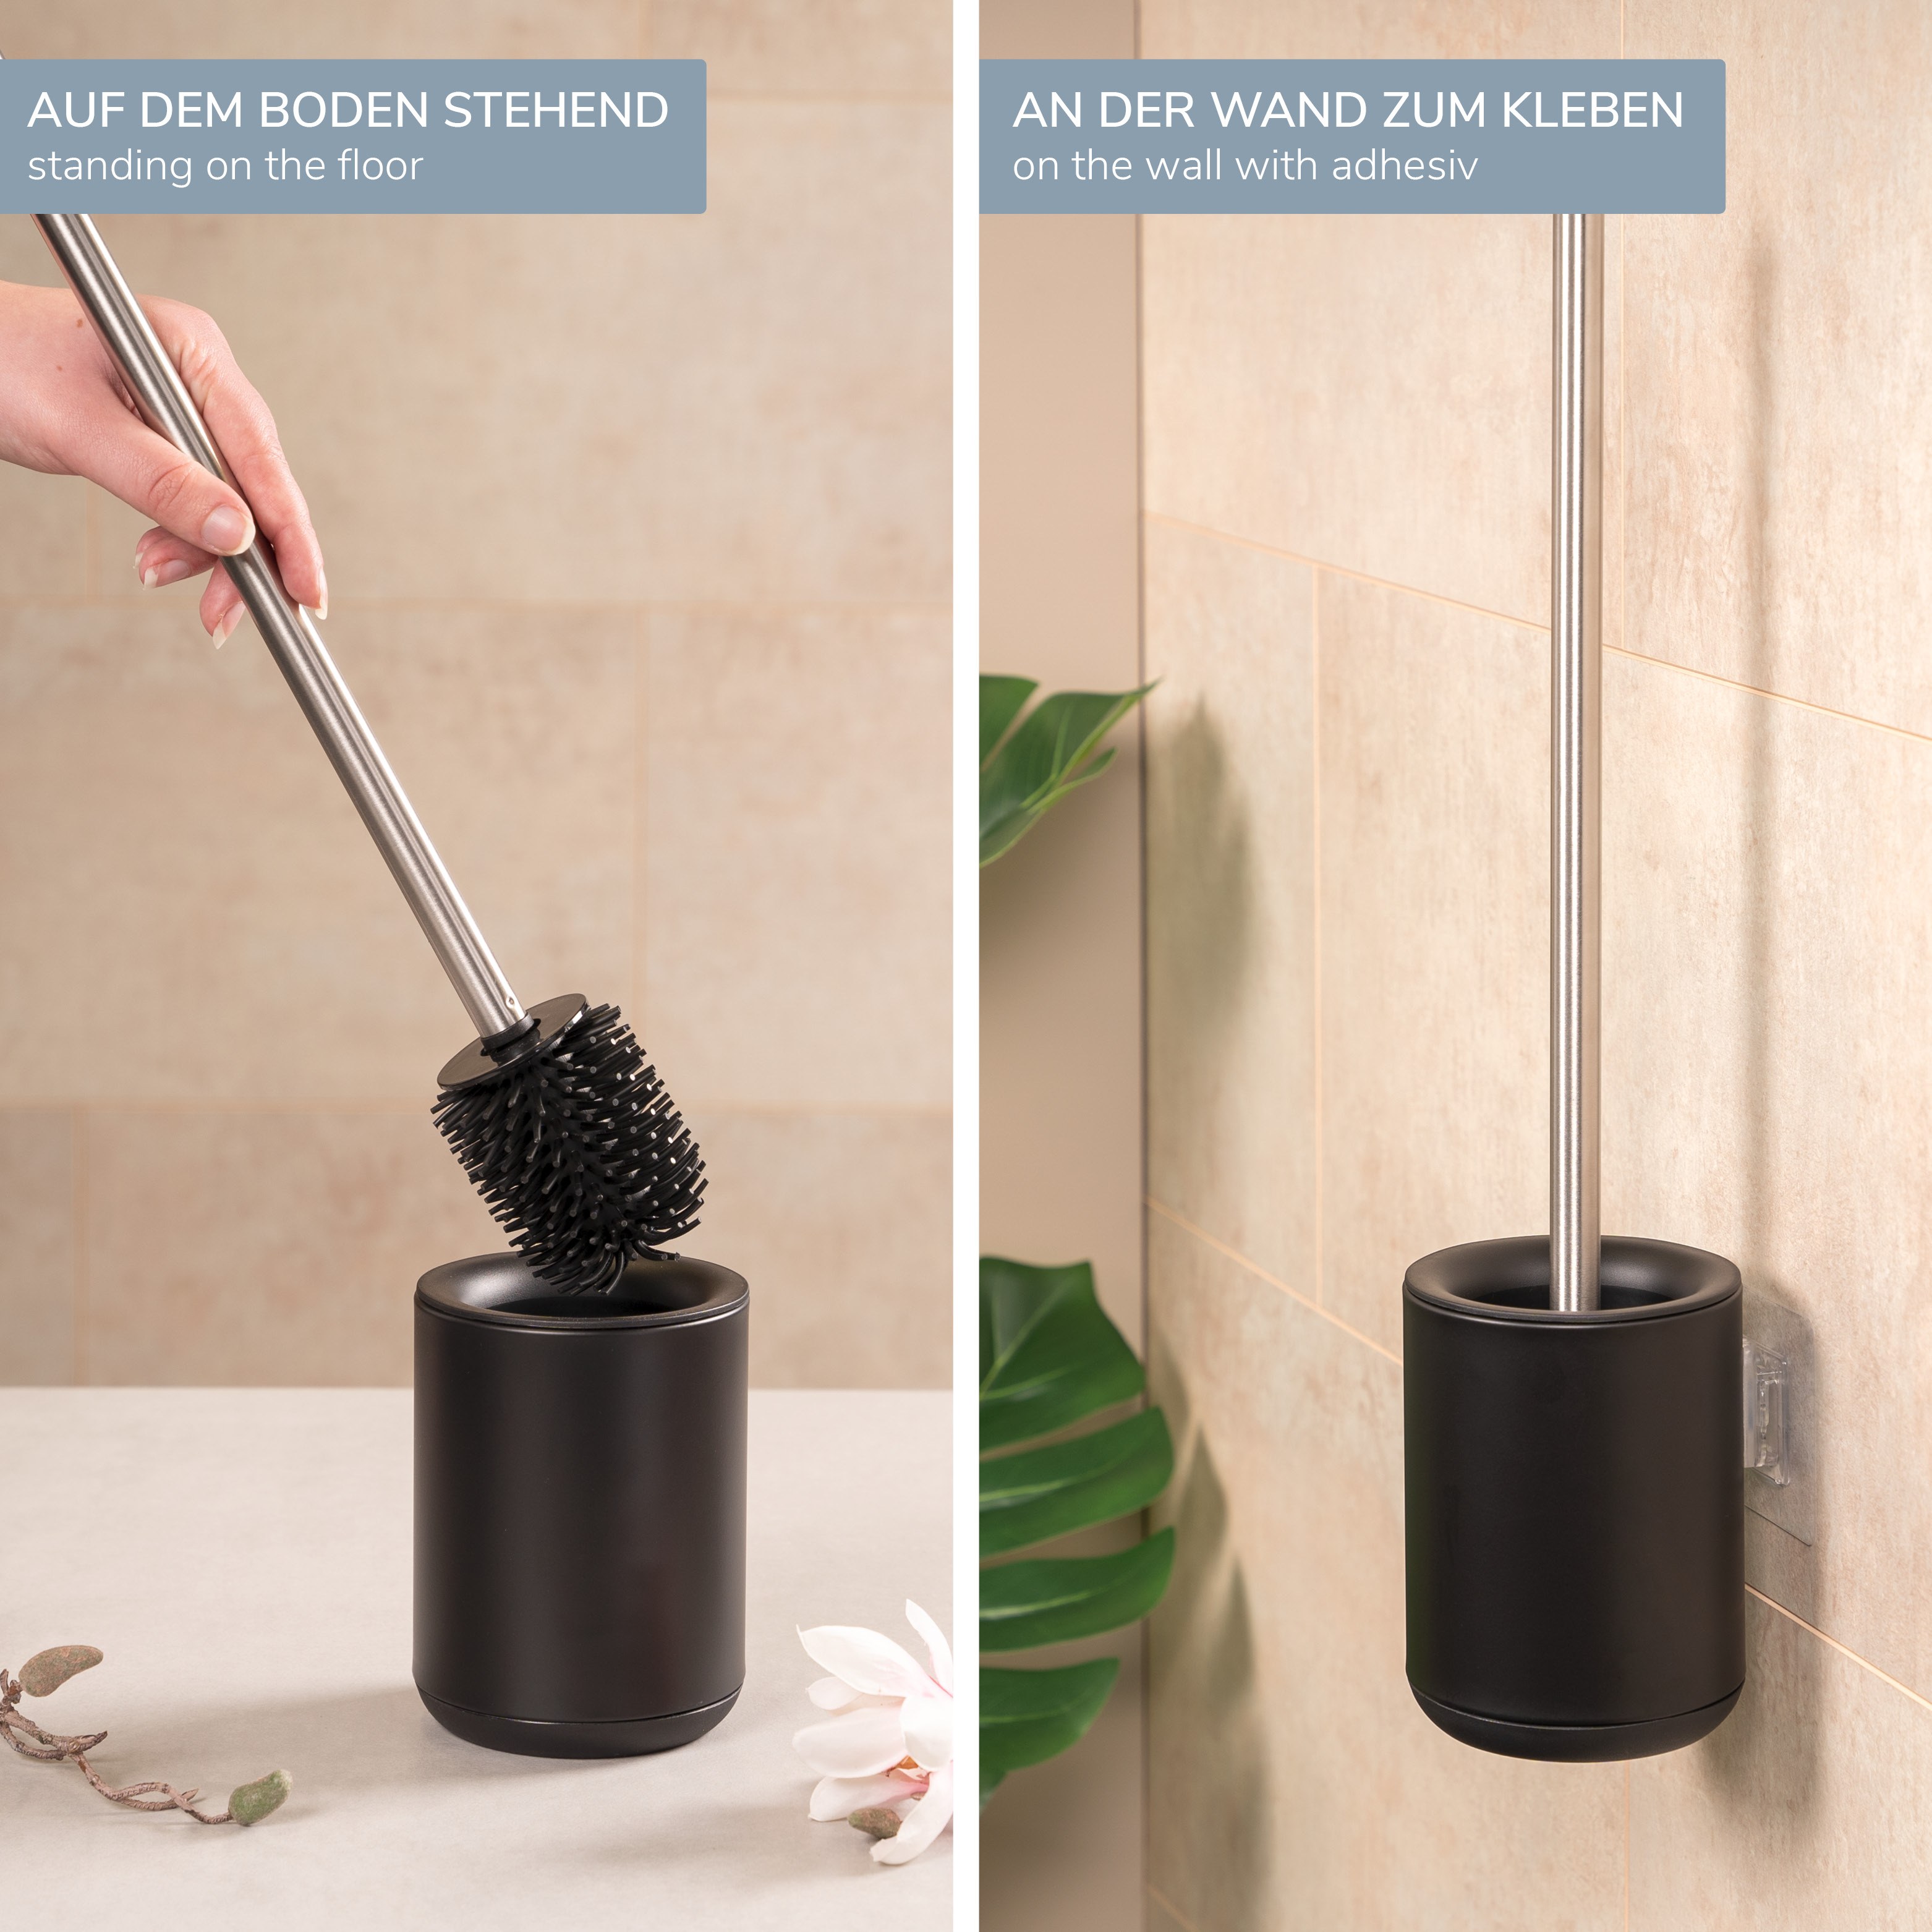 WC-Garnitur BARBENA, schwarz, mit flexibler 3in1 Bürste aus elastischem TPR-Material mit Wandhalterung // WC-Bürste Edelstahlgriff 